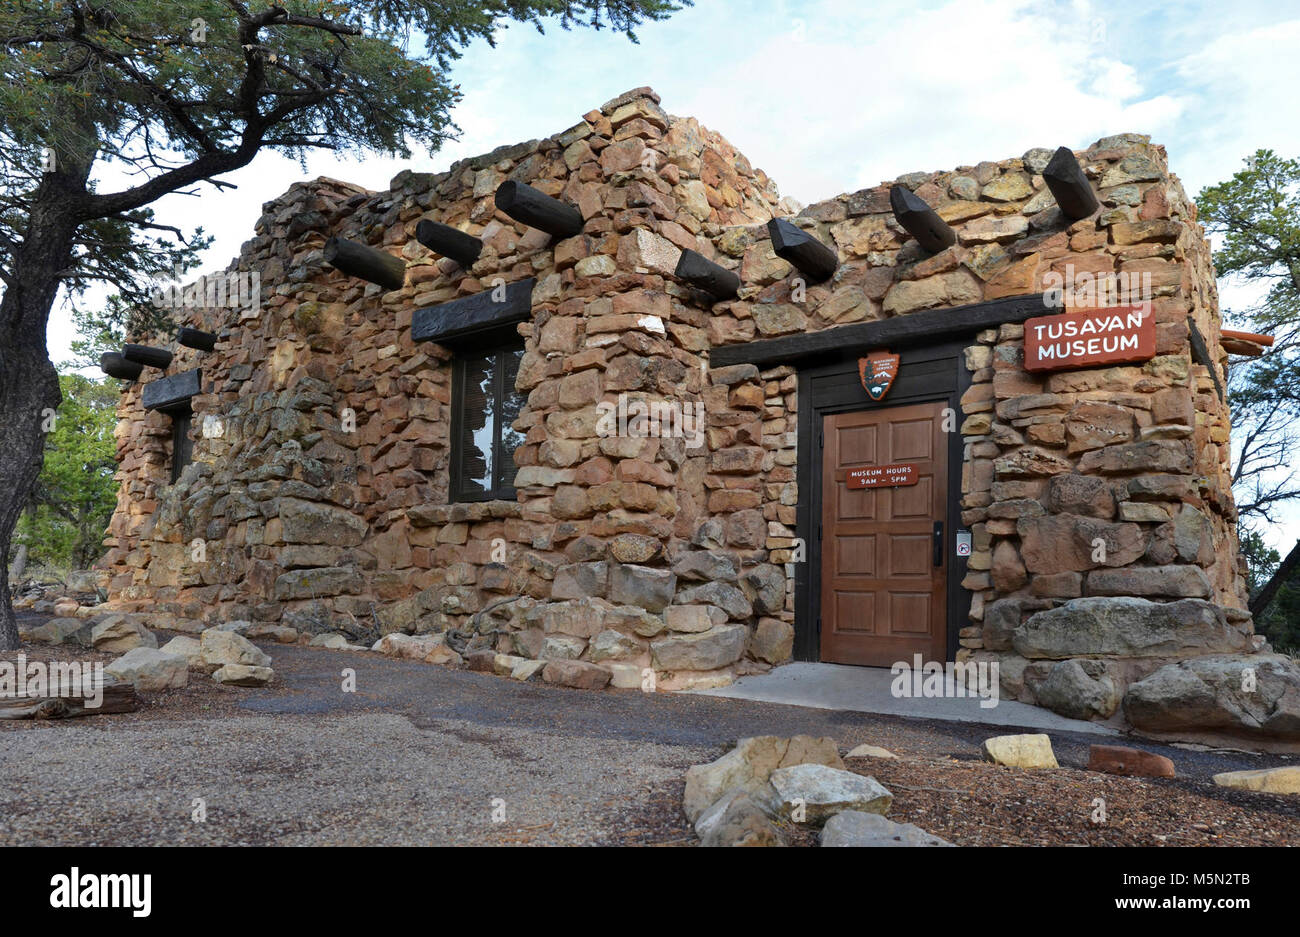 Le Parc National du Grand Canyon Tusayan Museum . Une visite à Tusayan Museum près de Desert View sur le bord sud du parc fournit un aperçu de la vie des Indiens Pueblo à Grand Canyon certains il y a 800 ans. L'entrée est libre. C'était une communauté prospère comme en témoignent ses poteries, pointes de flèches et autres objets ménagers. Le Musée Tusayan est ouvert tous les jours de 9:00 à 5:00, et est situé à 3 miles (5 km) à l'ouest de Desert View Banque D'Images